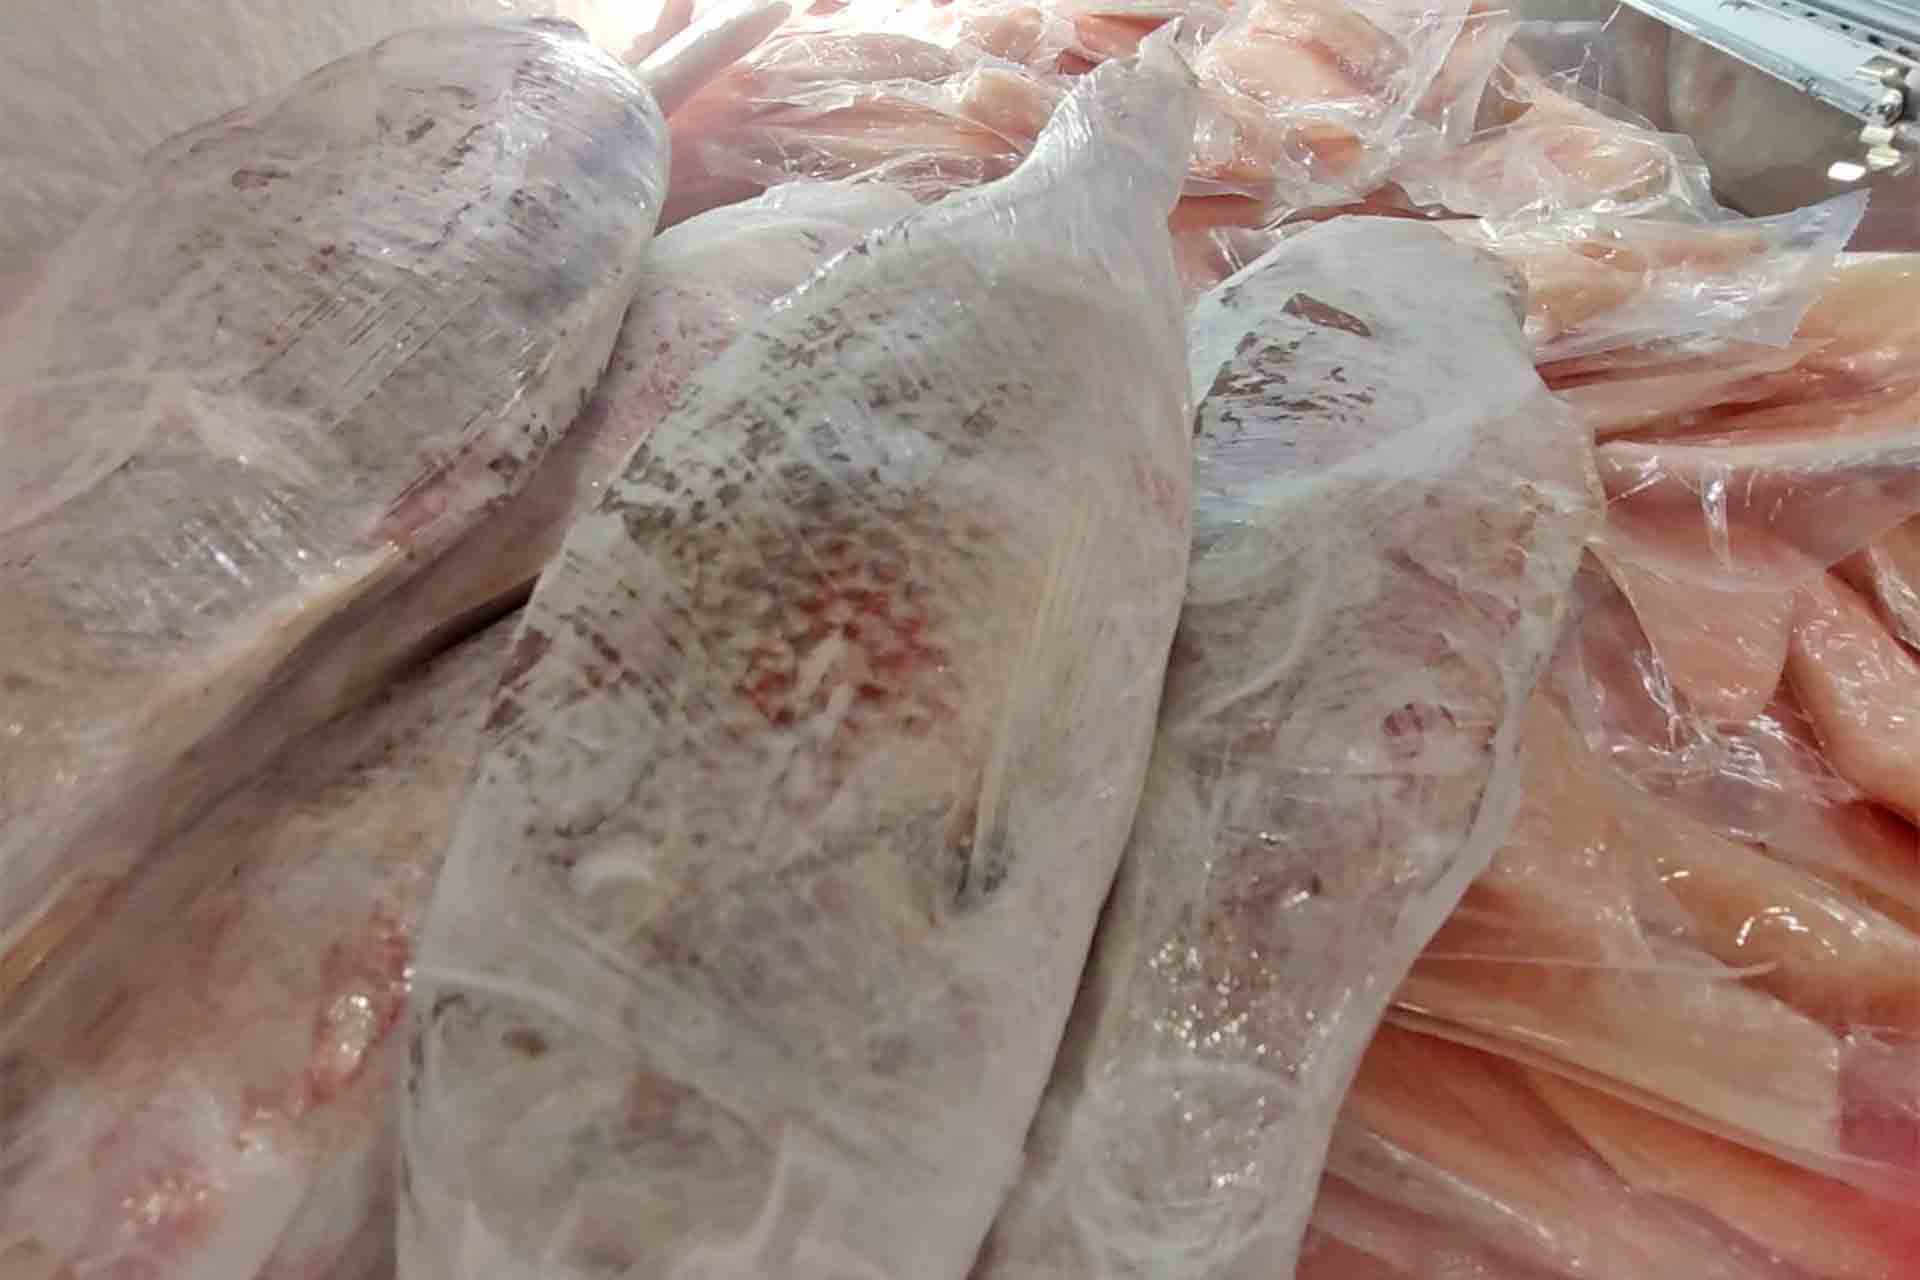 Se inunda mercado de Aguascalientes de pescado chino